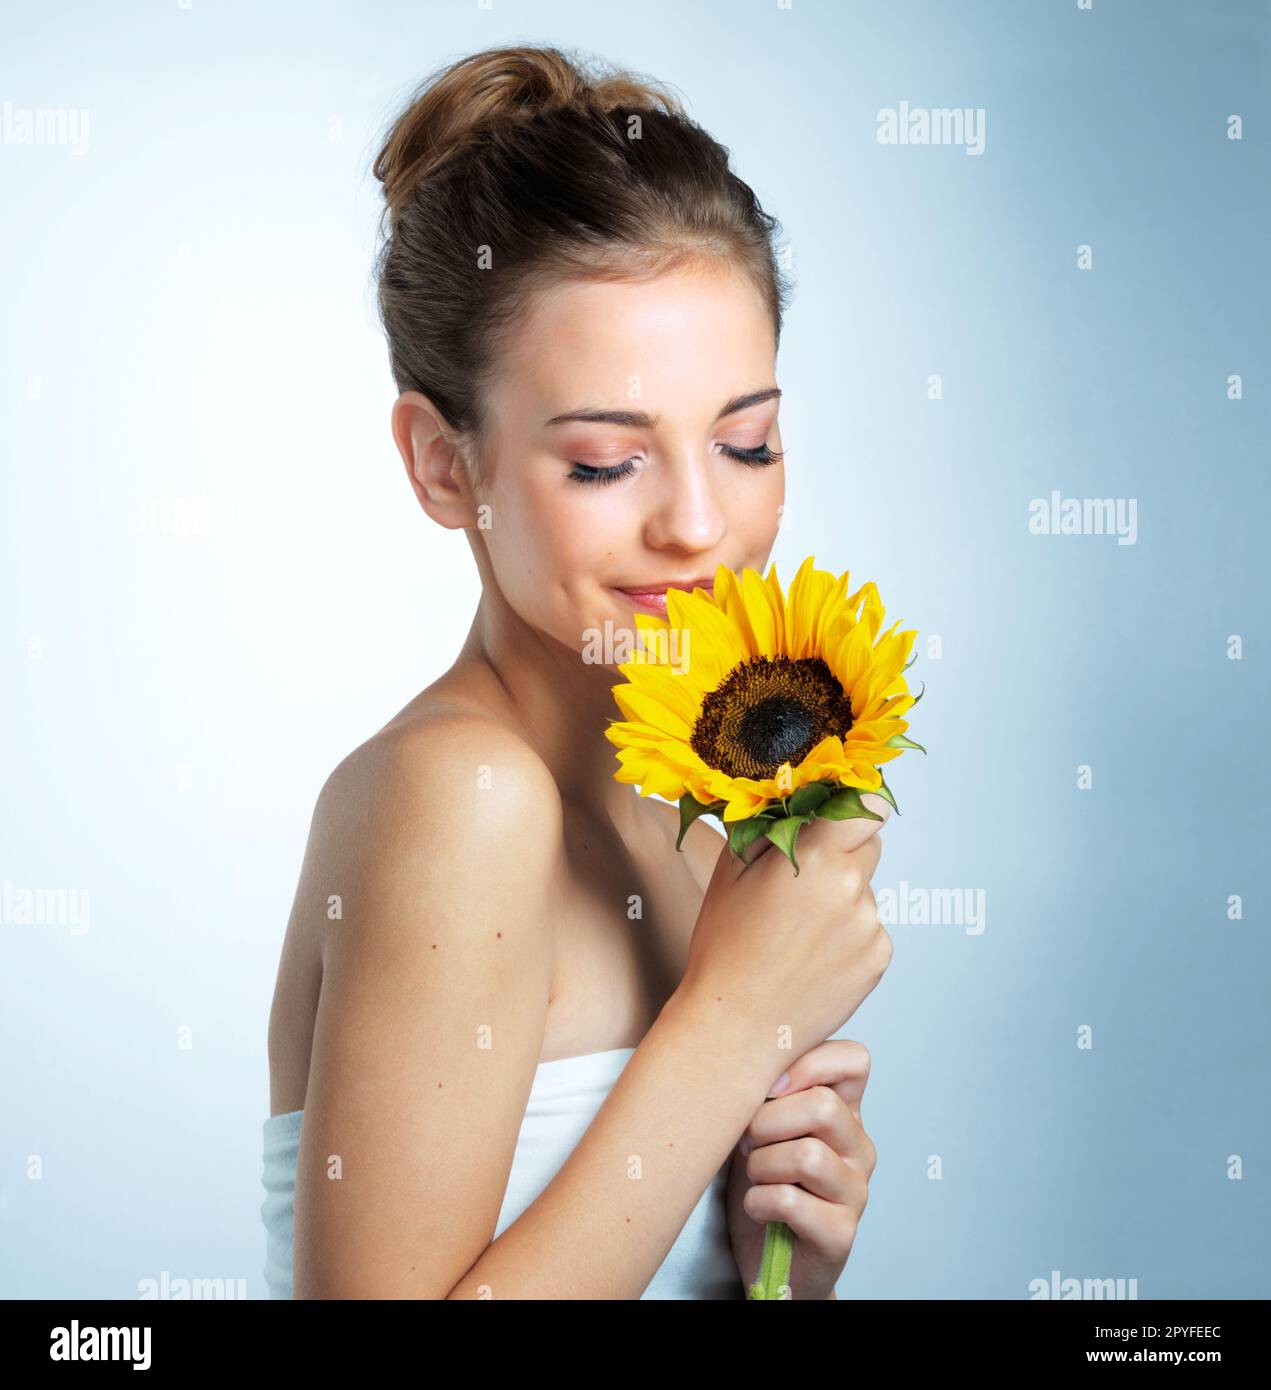 Schönheit, die von Natur aus perfekt ist. Studioaufnahme einer schönen jungen Frau, die eine Sonnenblume riecht. Stockfoto